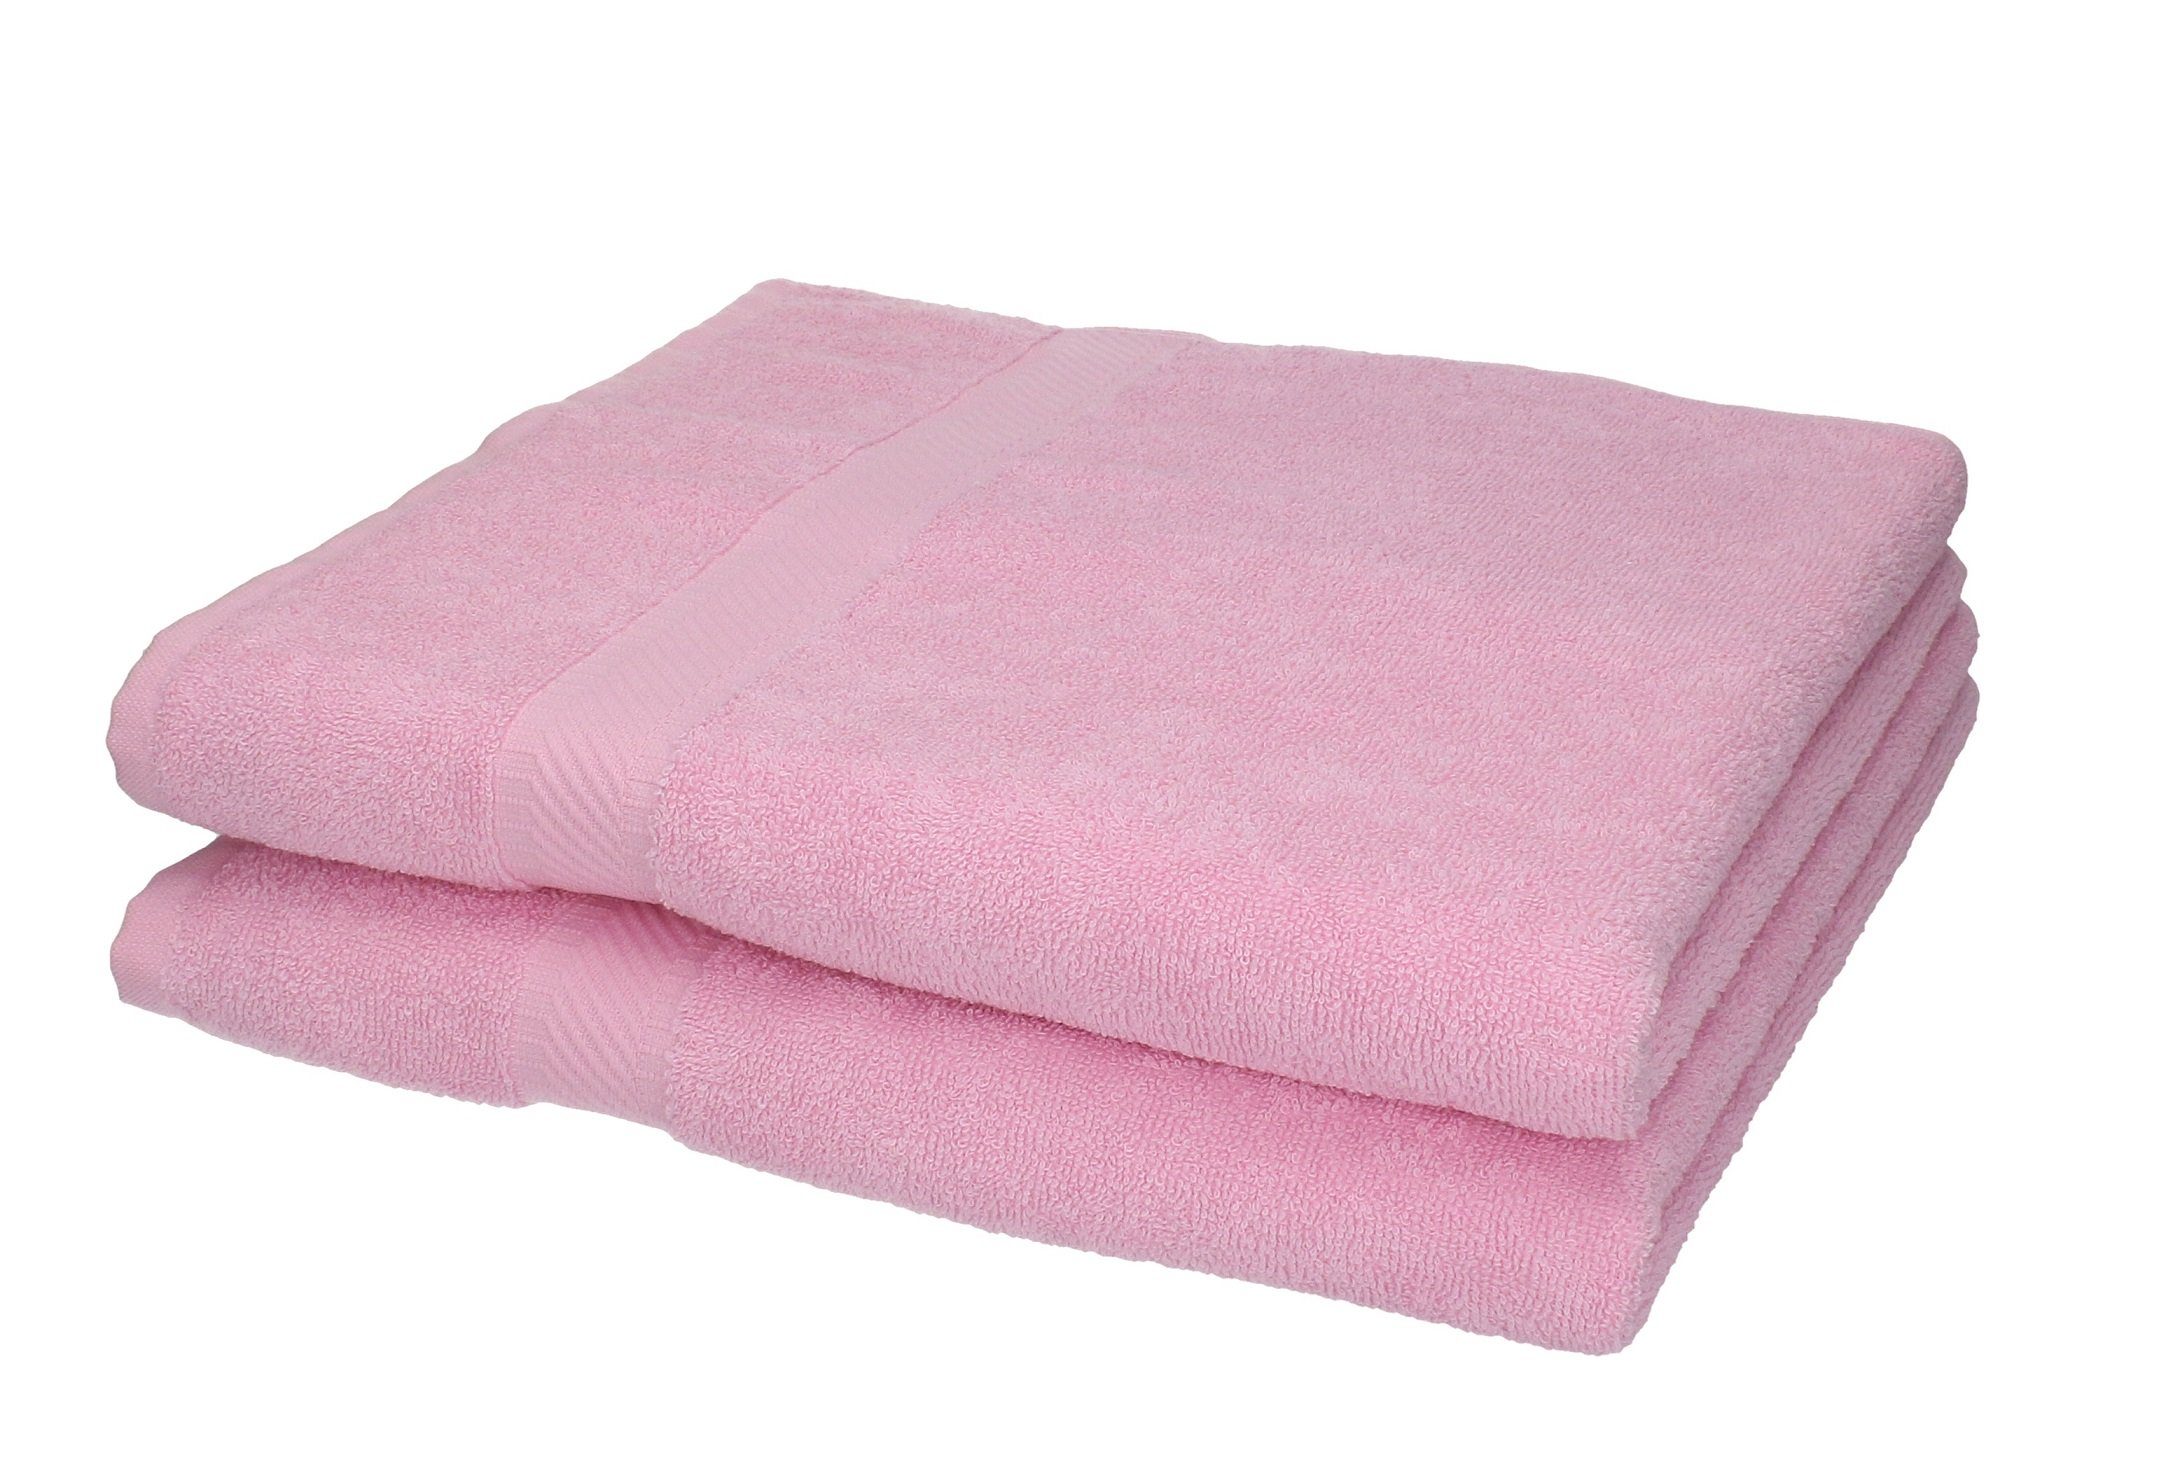 Betz Duschtücher 2 Stück Duschtücher Duschtuch-Set Palermo 70 x 140 cm Farbe rosé, 100% Baumwolle | Badetücher